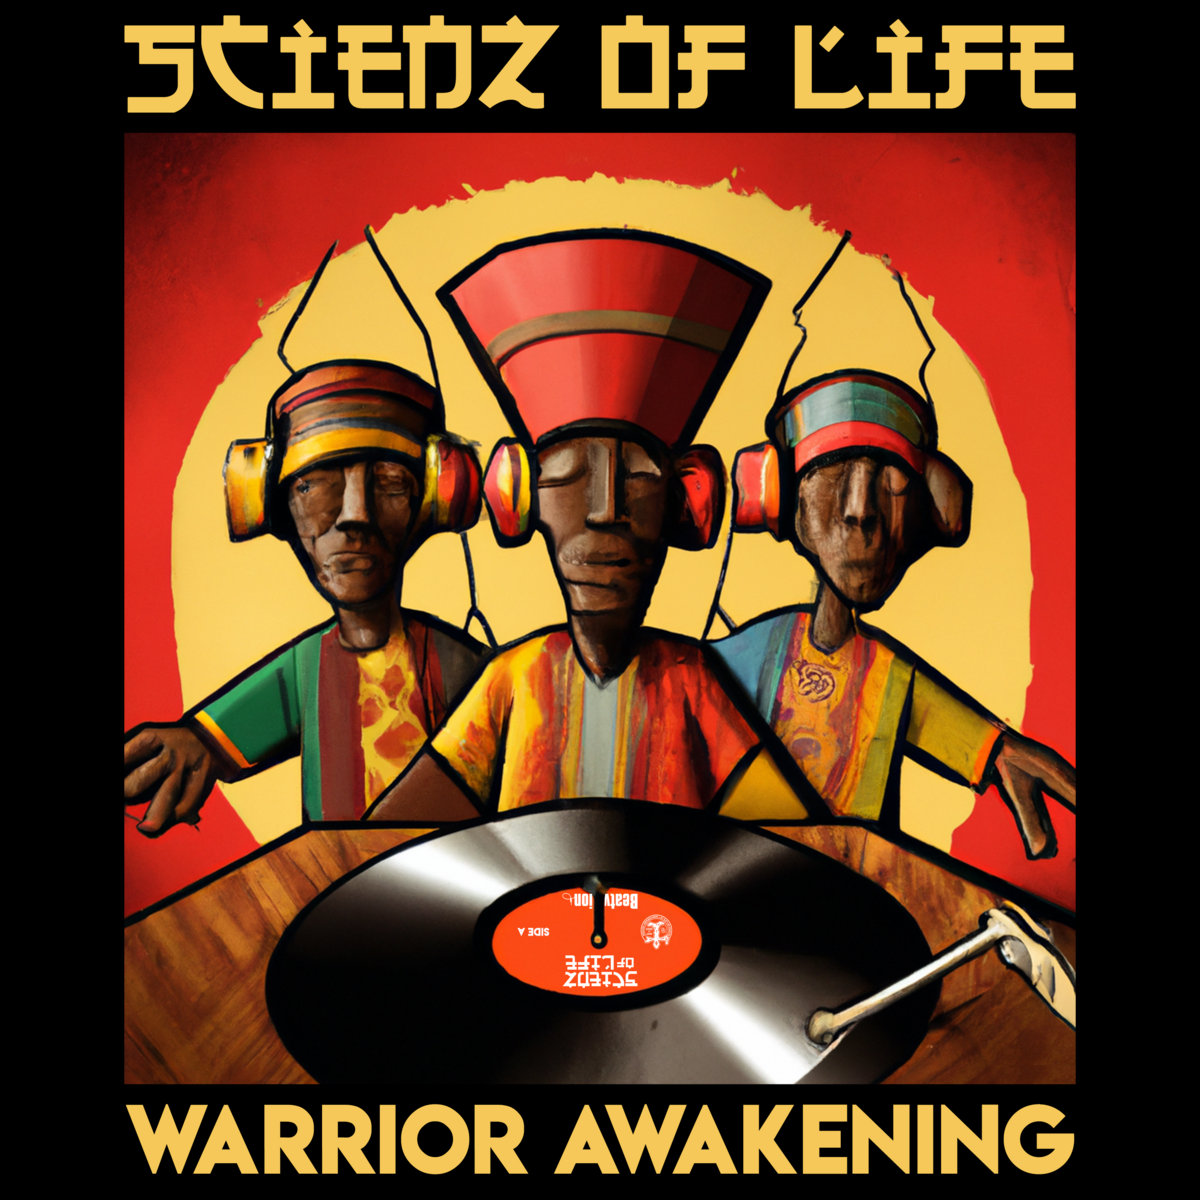 Warrior_awakening_scienz_of_life